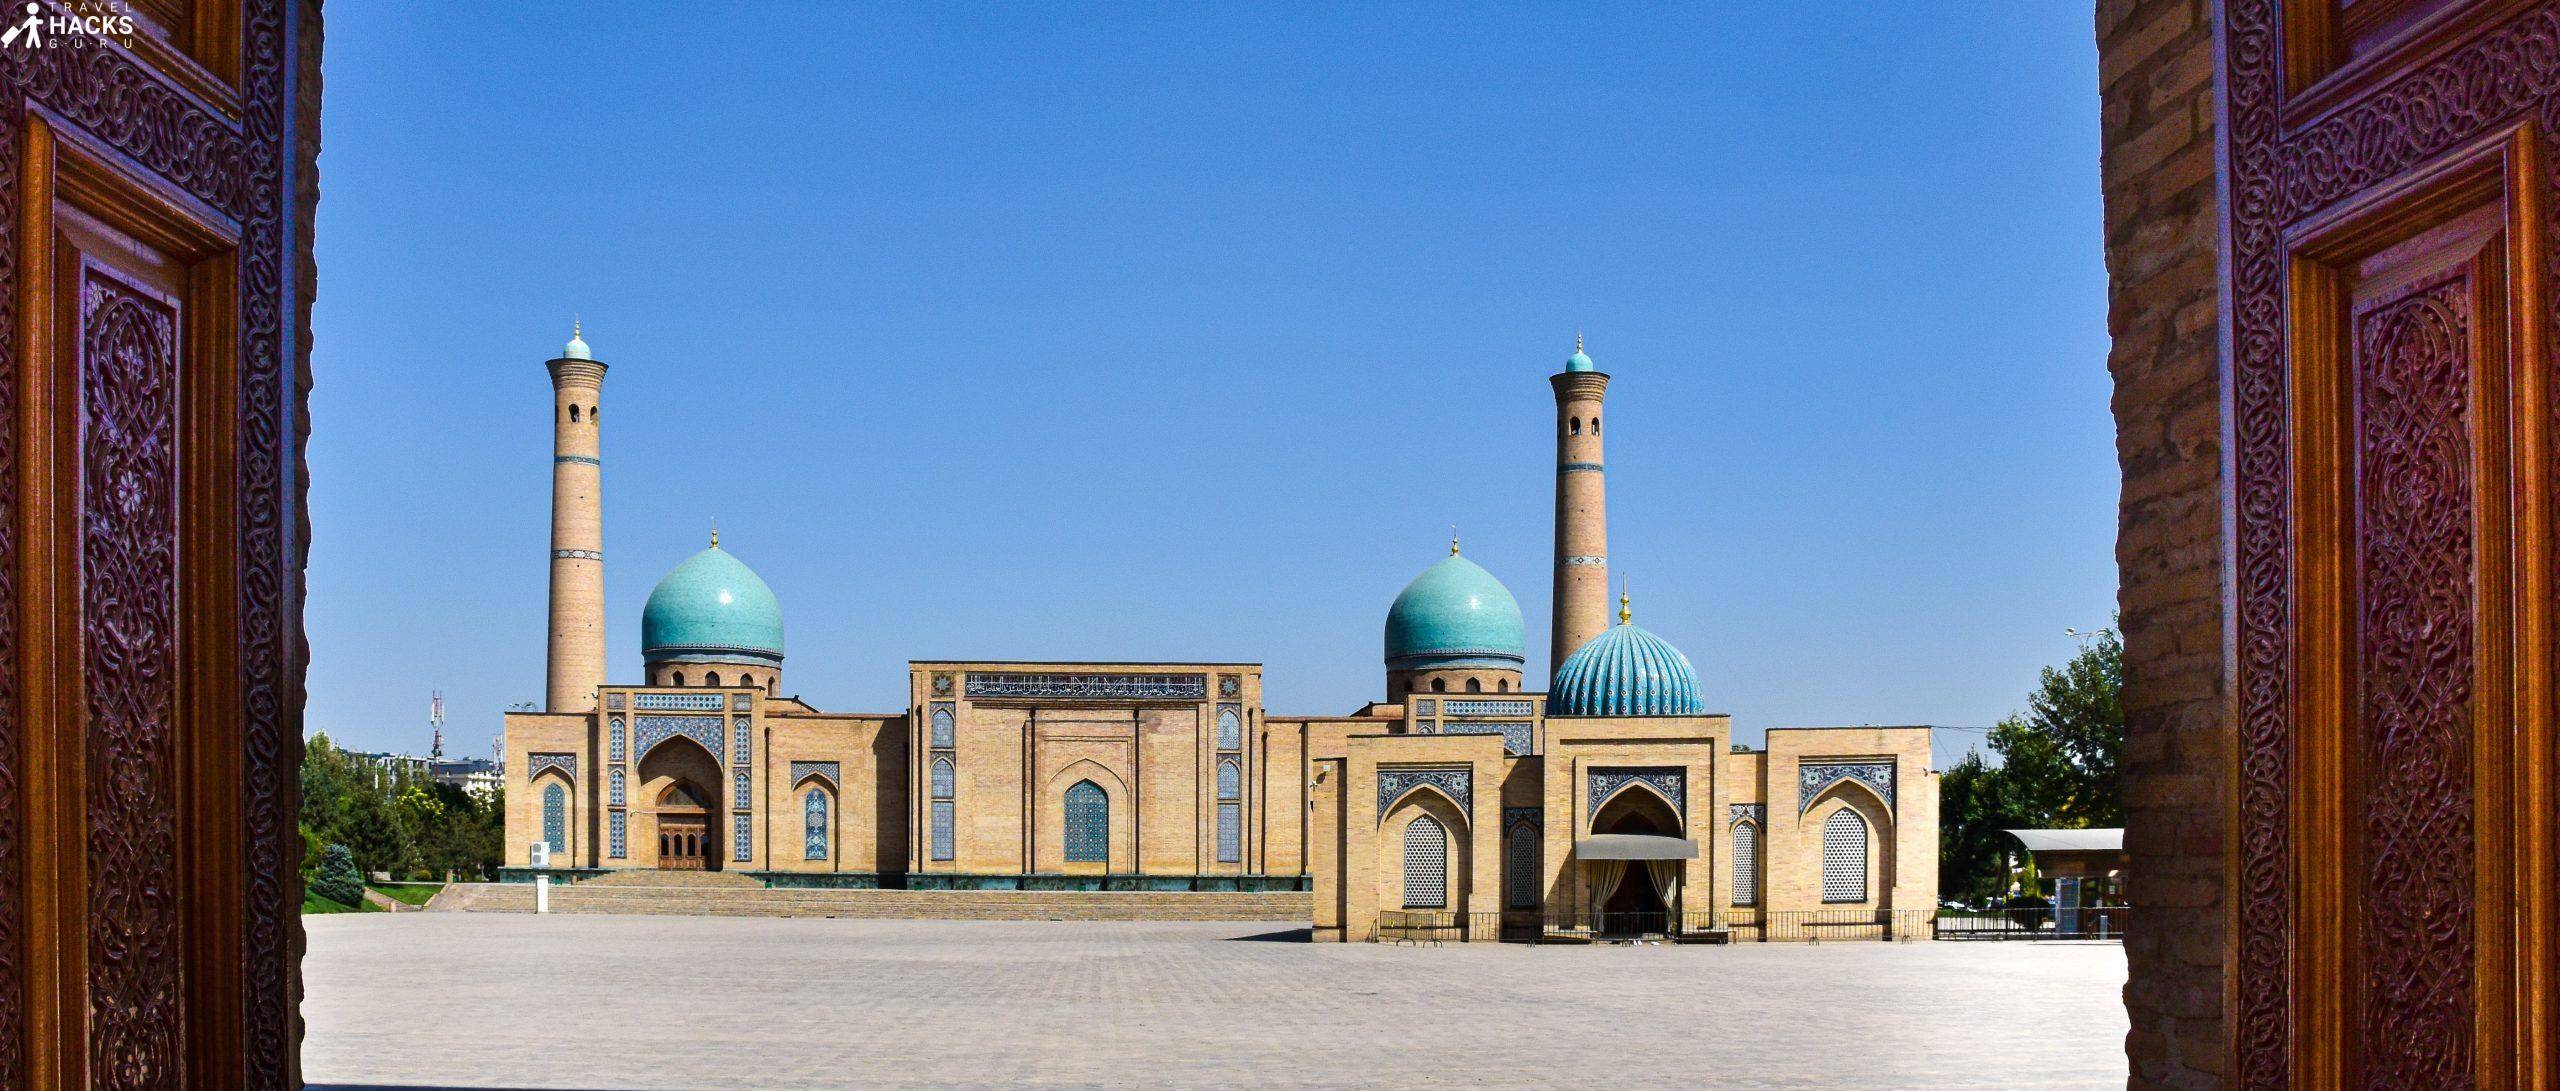 Bienvenue à Tachkent, la capitale ouzbèke